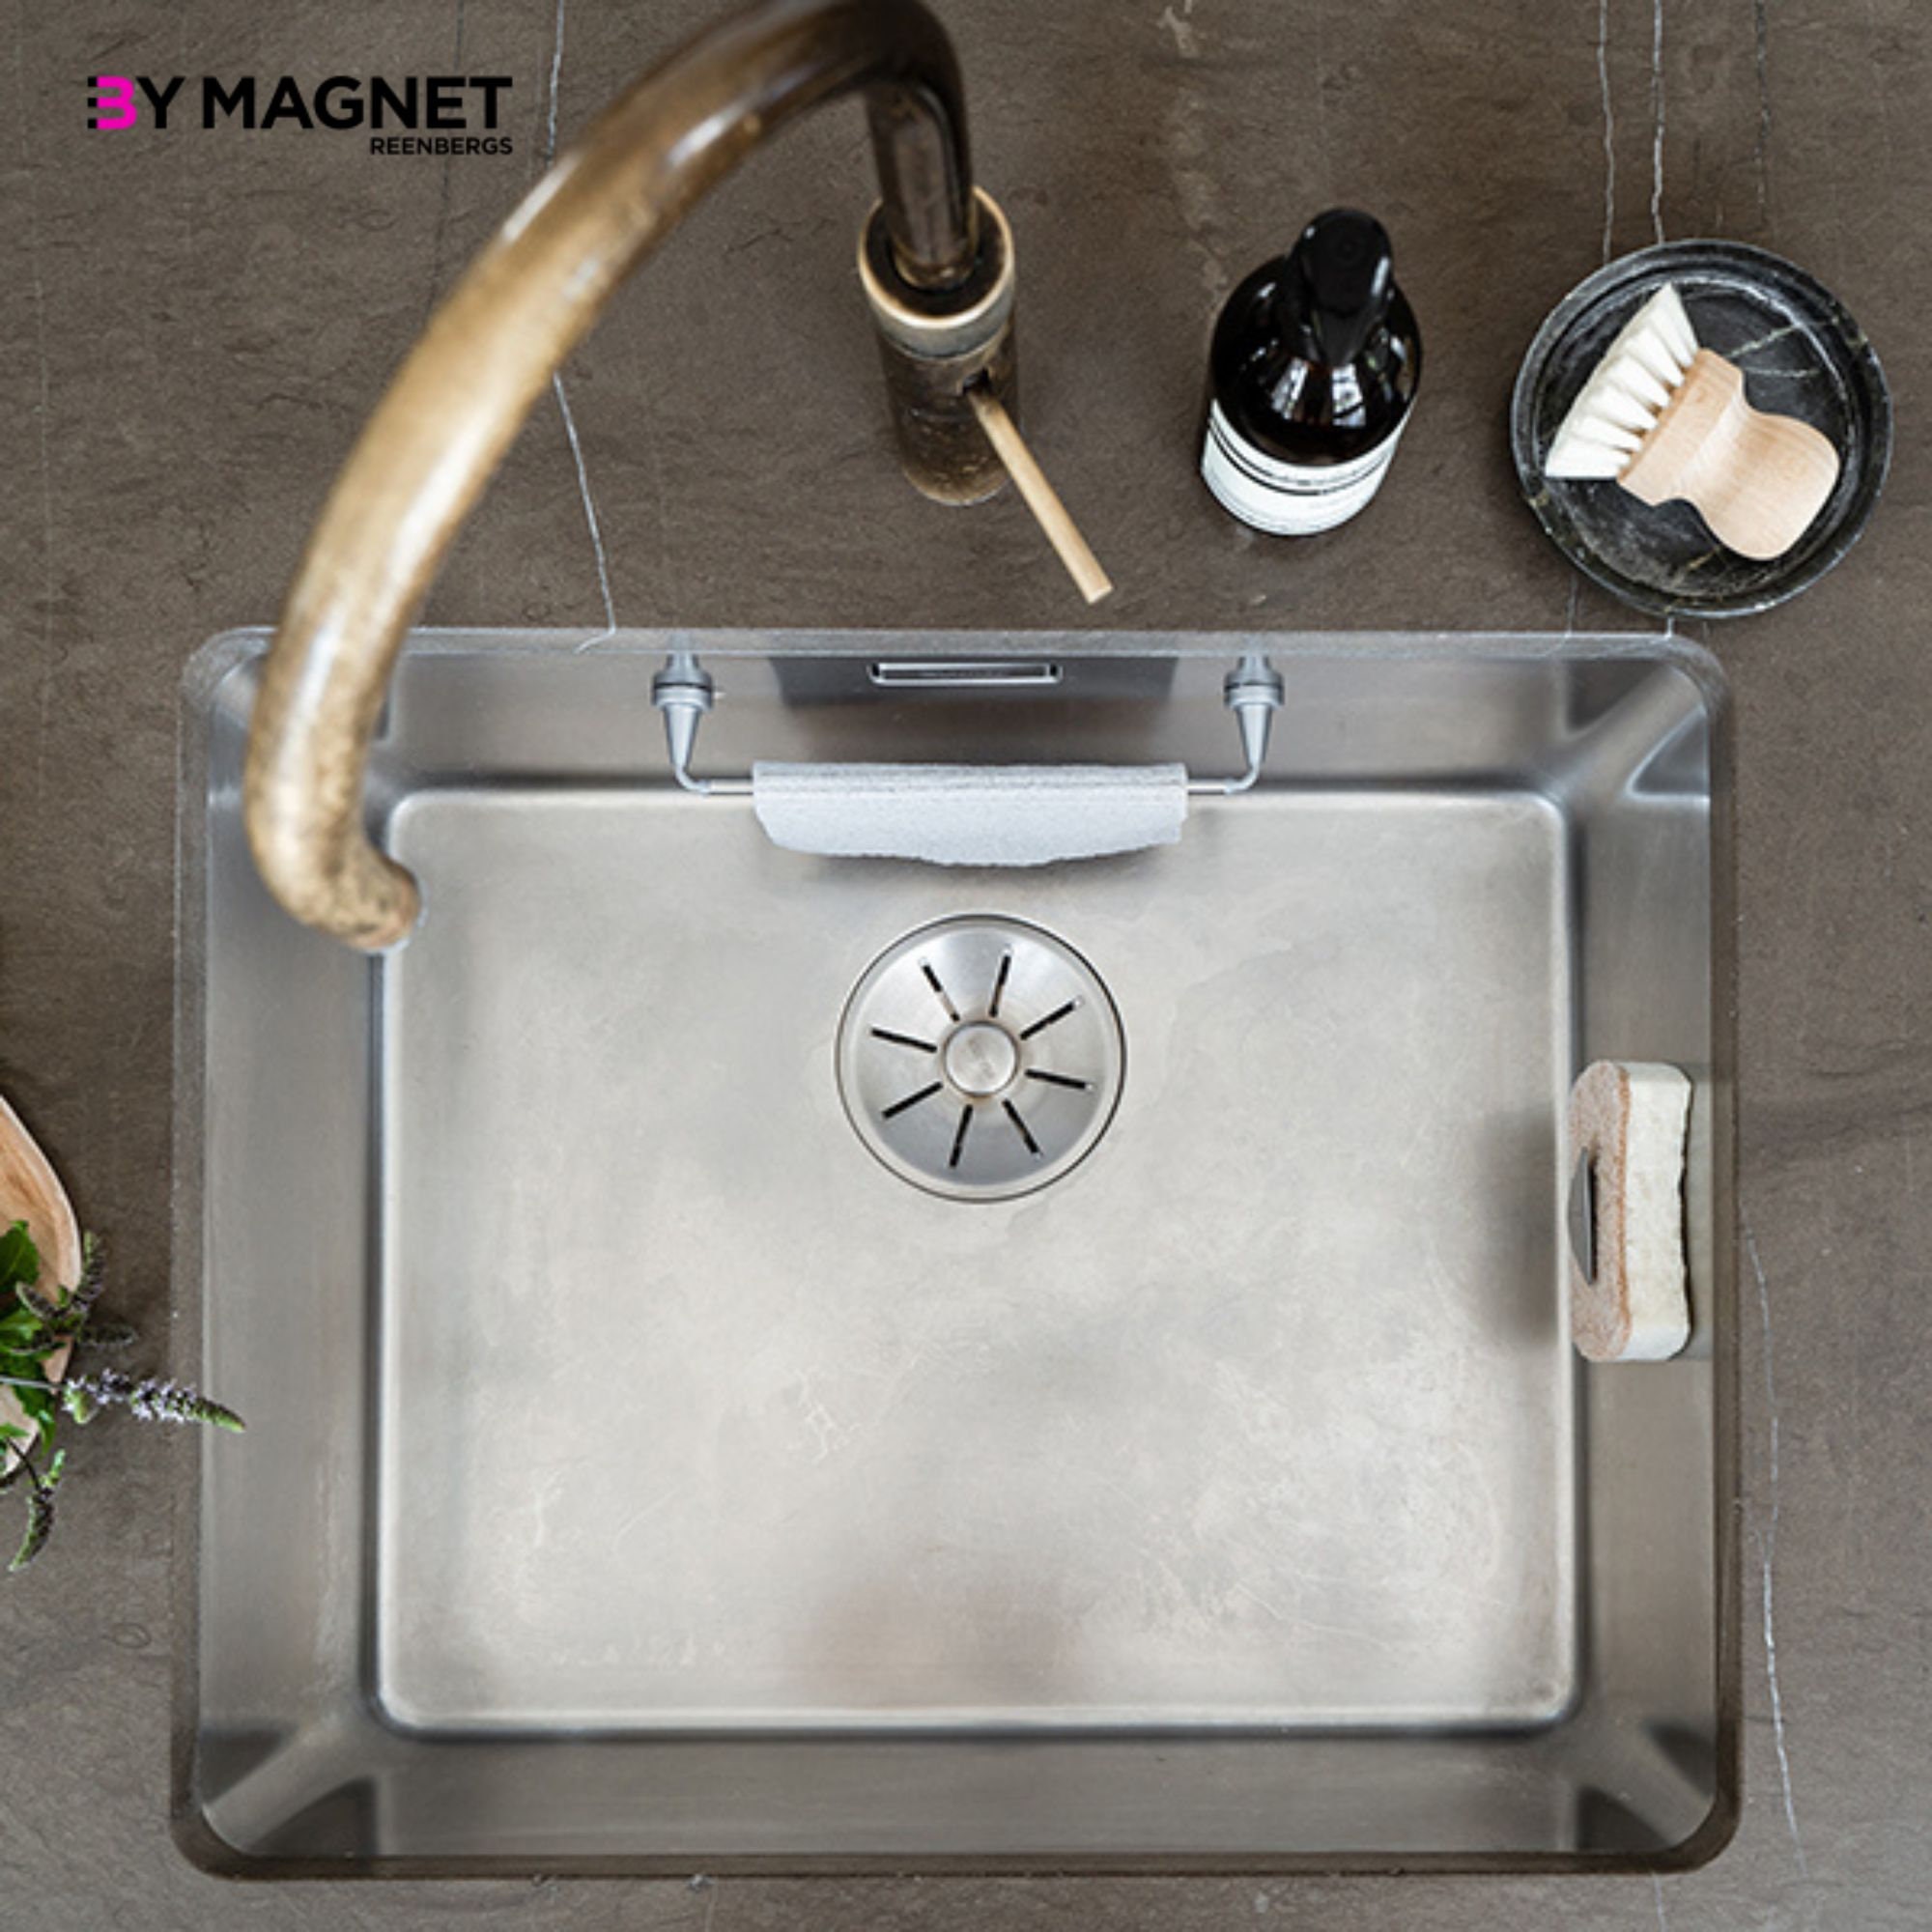 Fregadero de acero inoxidable de un solo tazón montado en la pared,  fregadero de cocina, fregadero pequeño que ahorra espacio para cocina,  baño